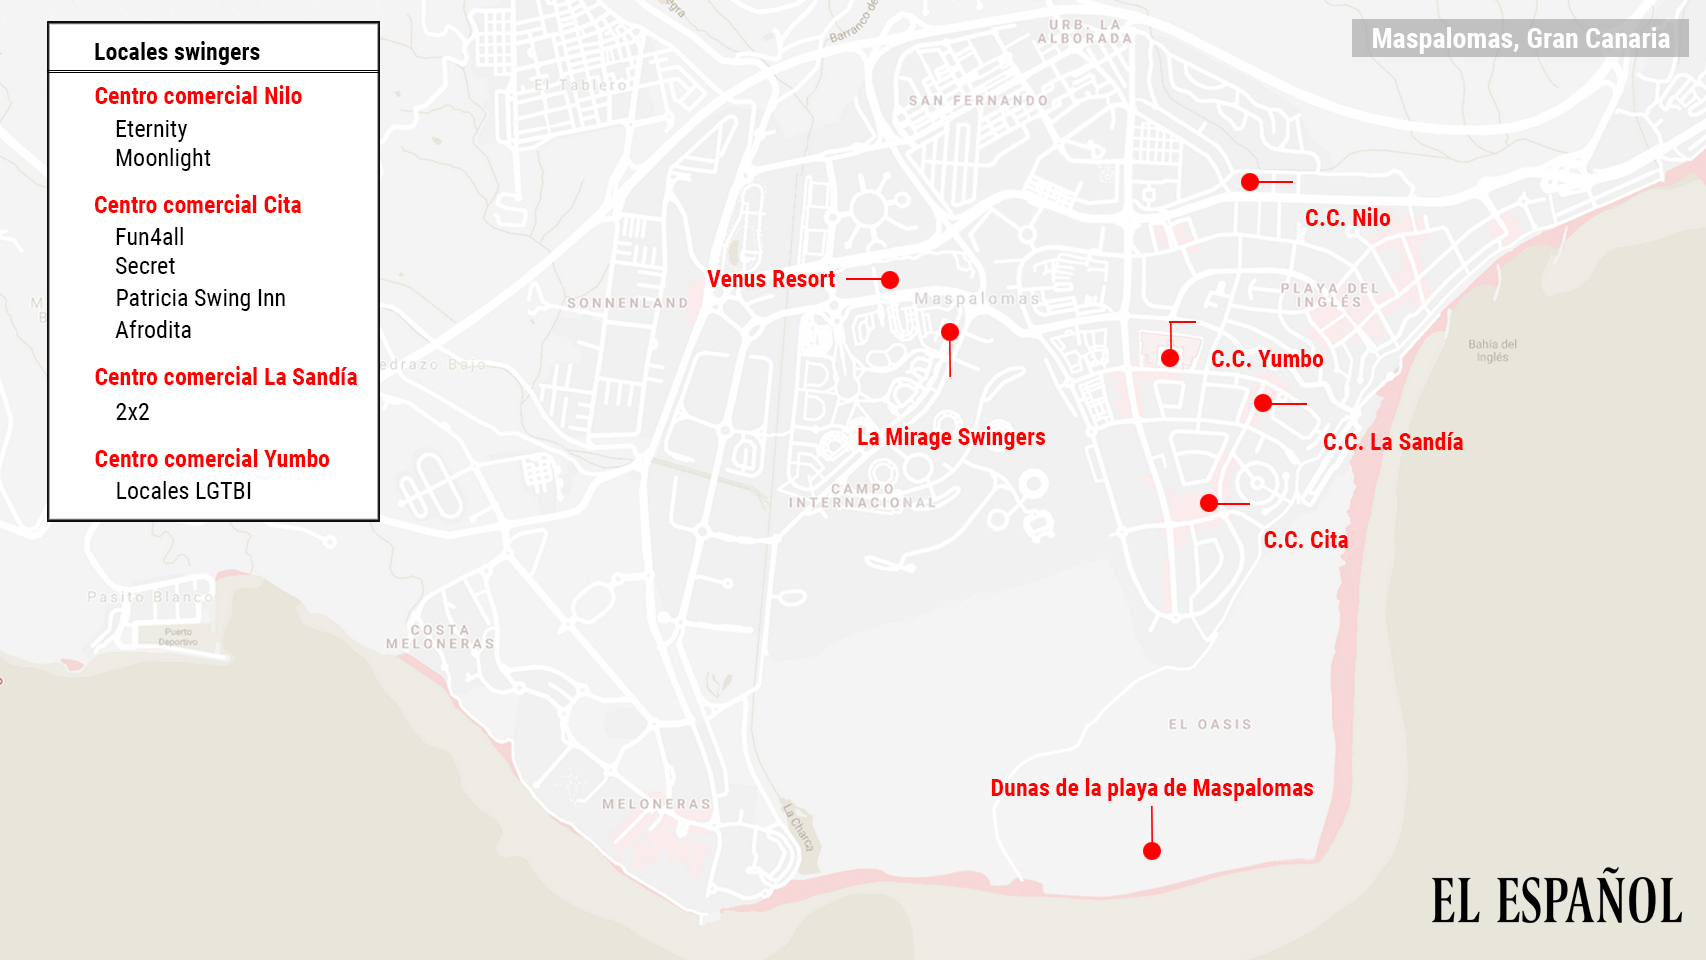 Mapa de los principales puntos turísticos de sexo de la localidad de Maspalomas